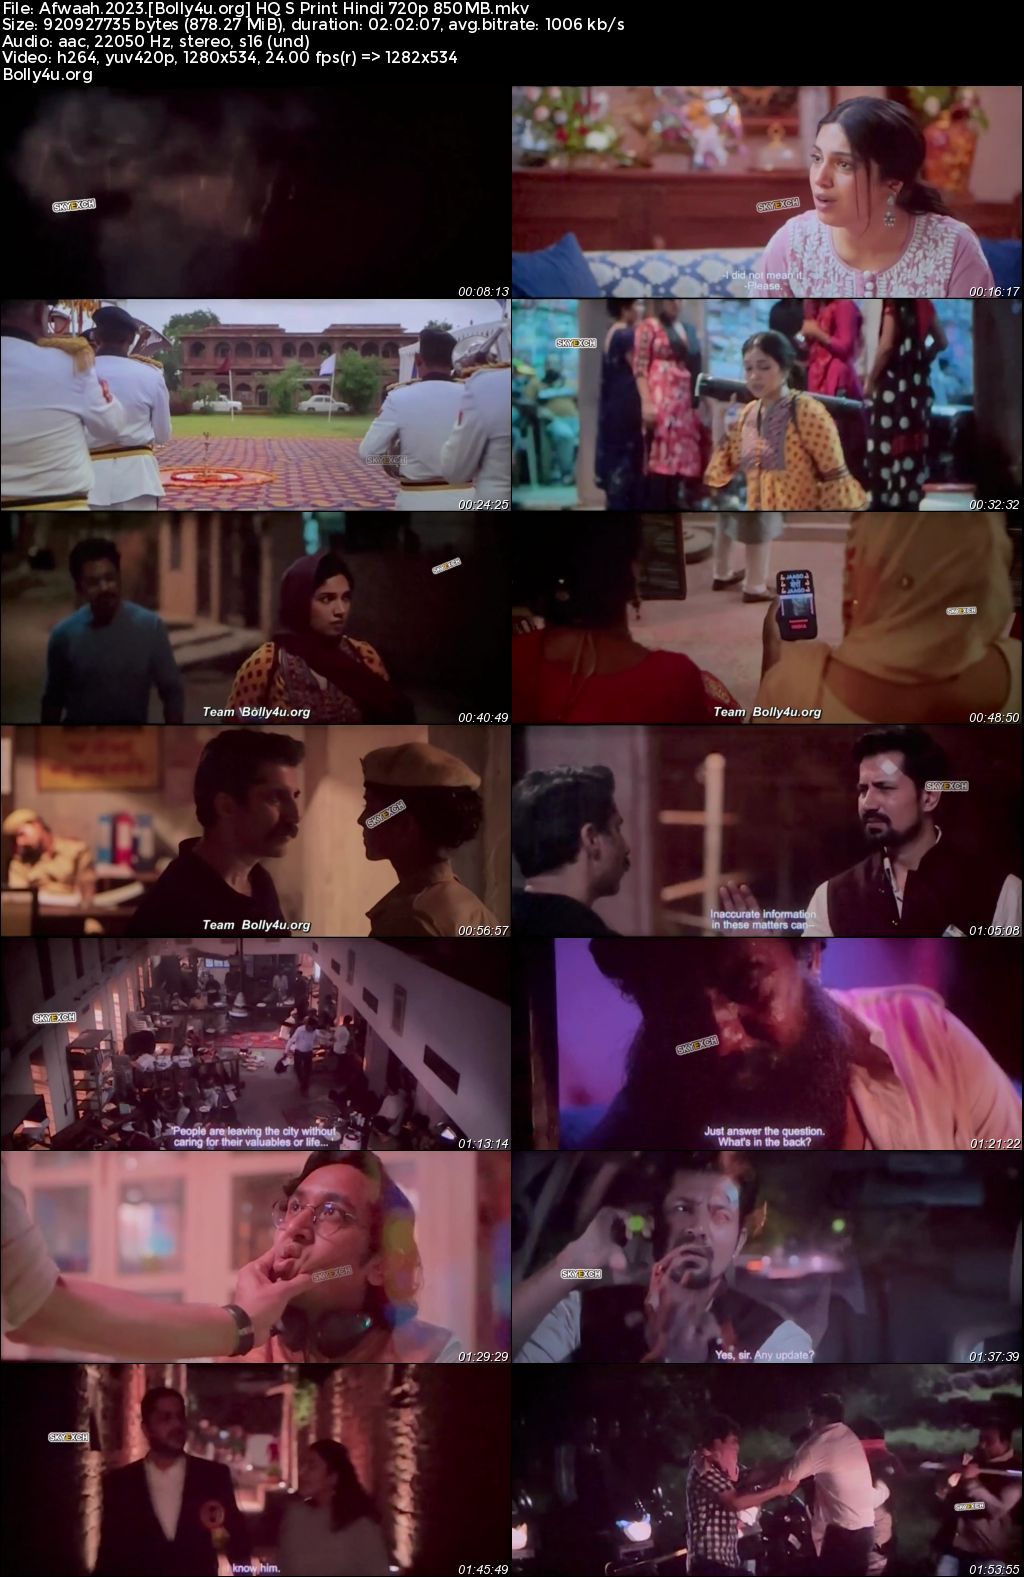 Afwaah 2023 HQ S Print Hindi Full Movie Download 1080p 720p 480p